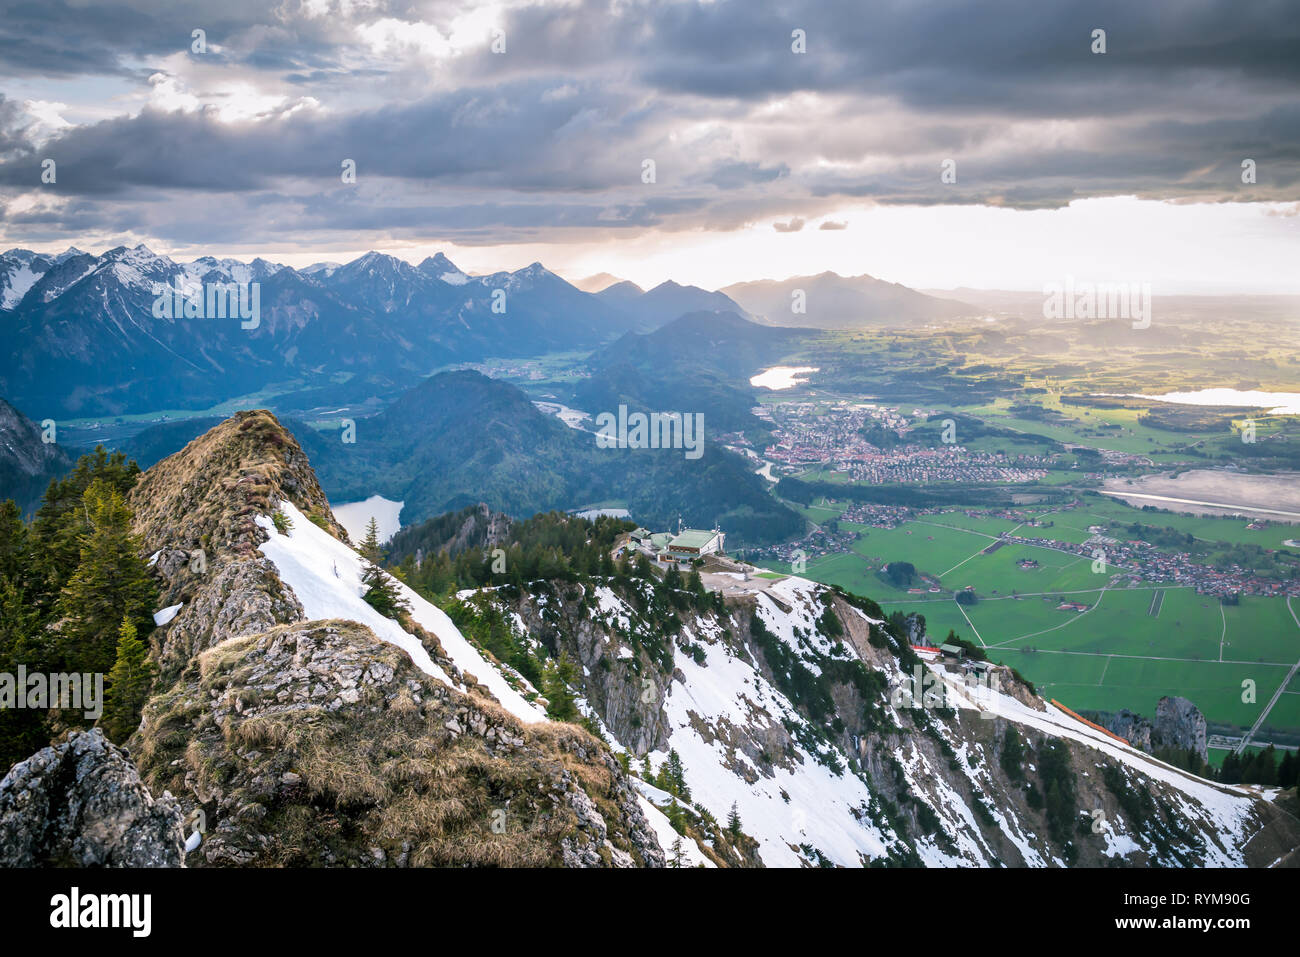 Paesaggio panoramico che si affaccia sulle montagne innevate e nuvole drammatico. I raggi di luce solare che cade su di valle con laghi e piccoli villaggi in Baviera, Germania. Foto Stock